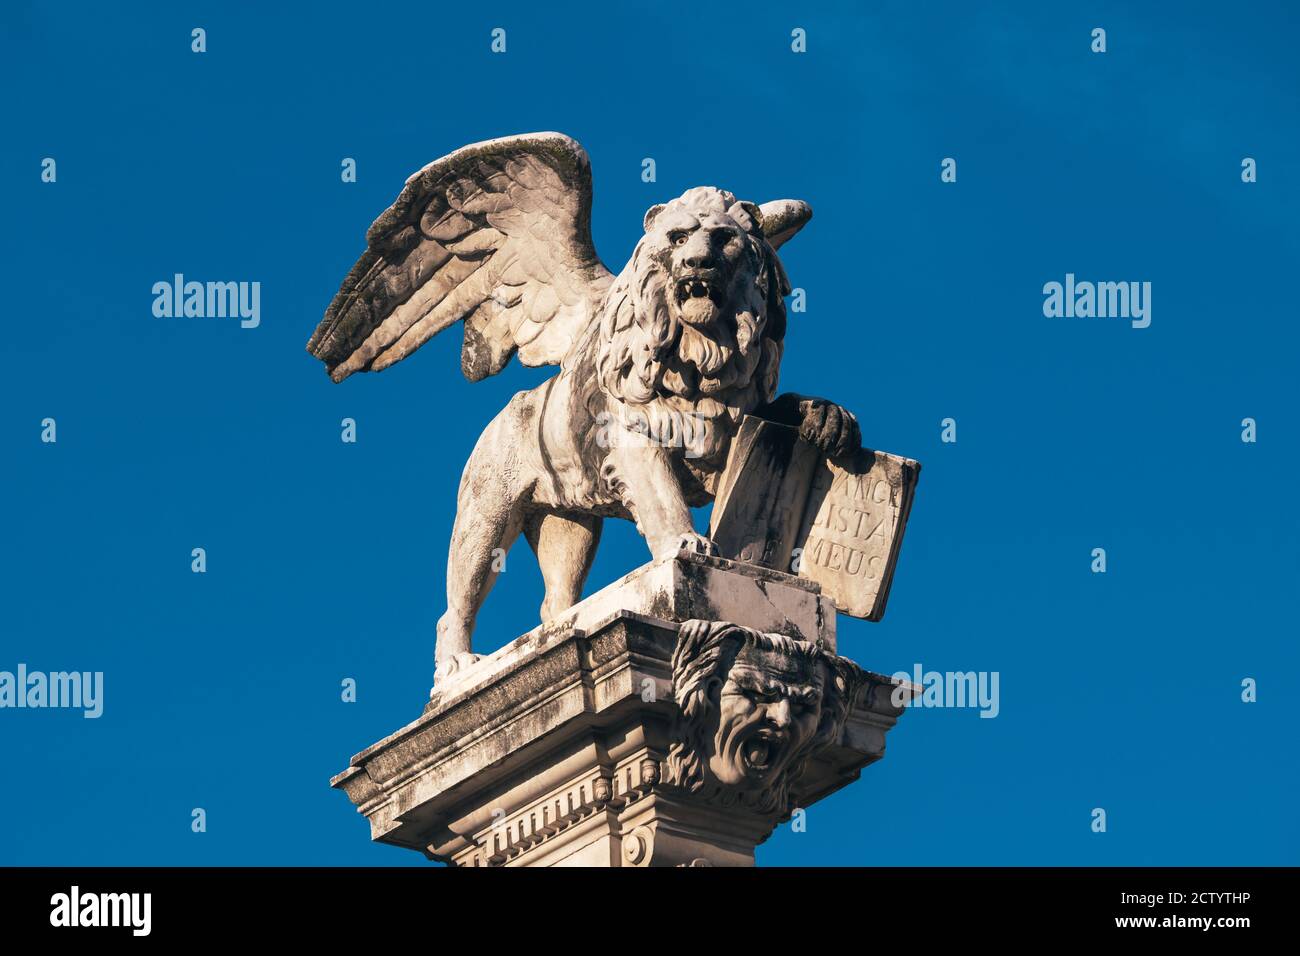 León Veneciano de San Marcos en la Piazza dei Signori, Padua, un símbolo de la República de Venecia Foto de stock